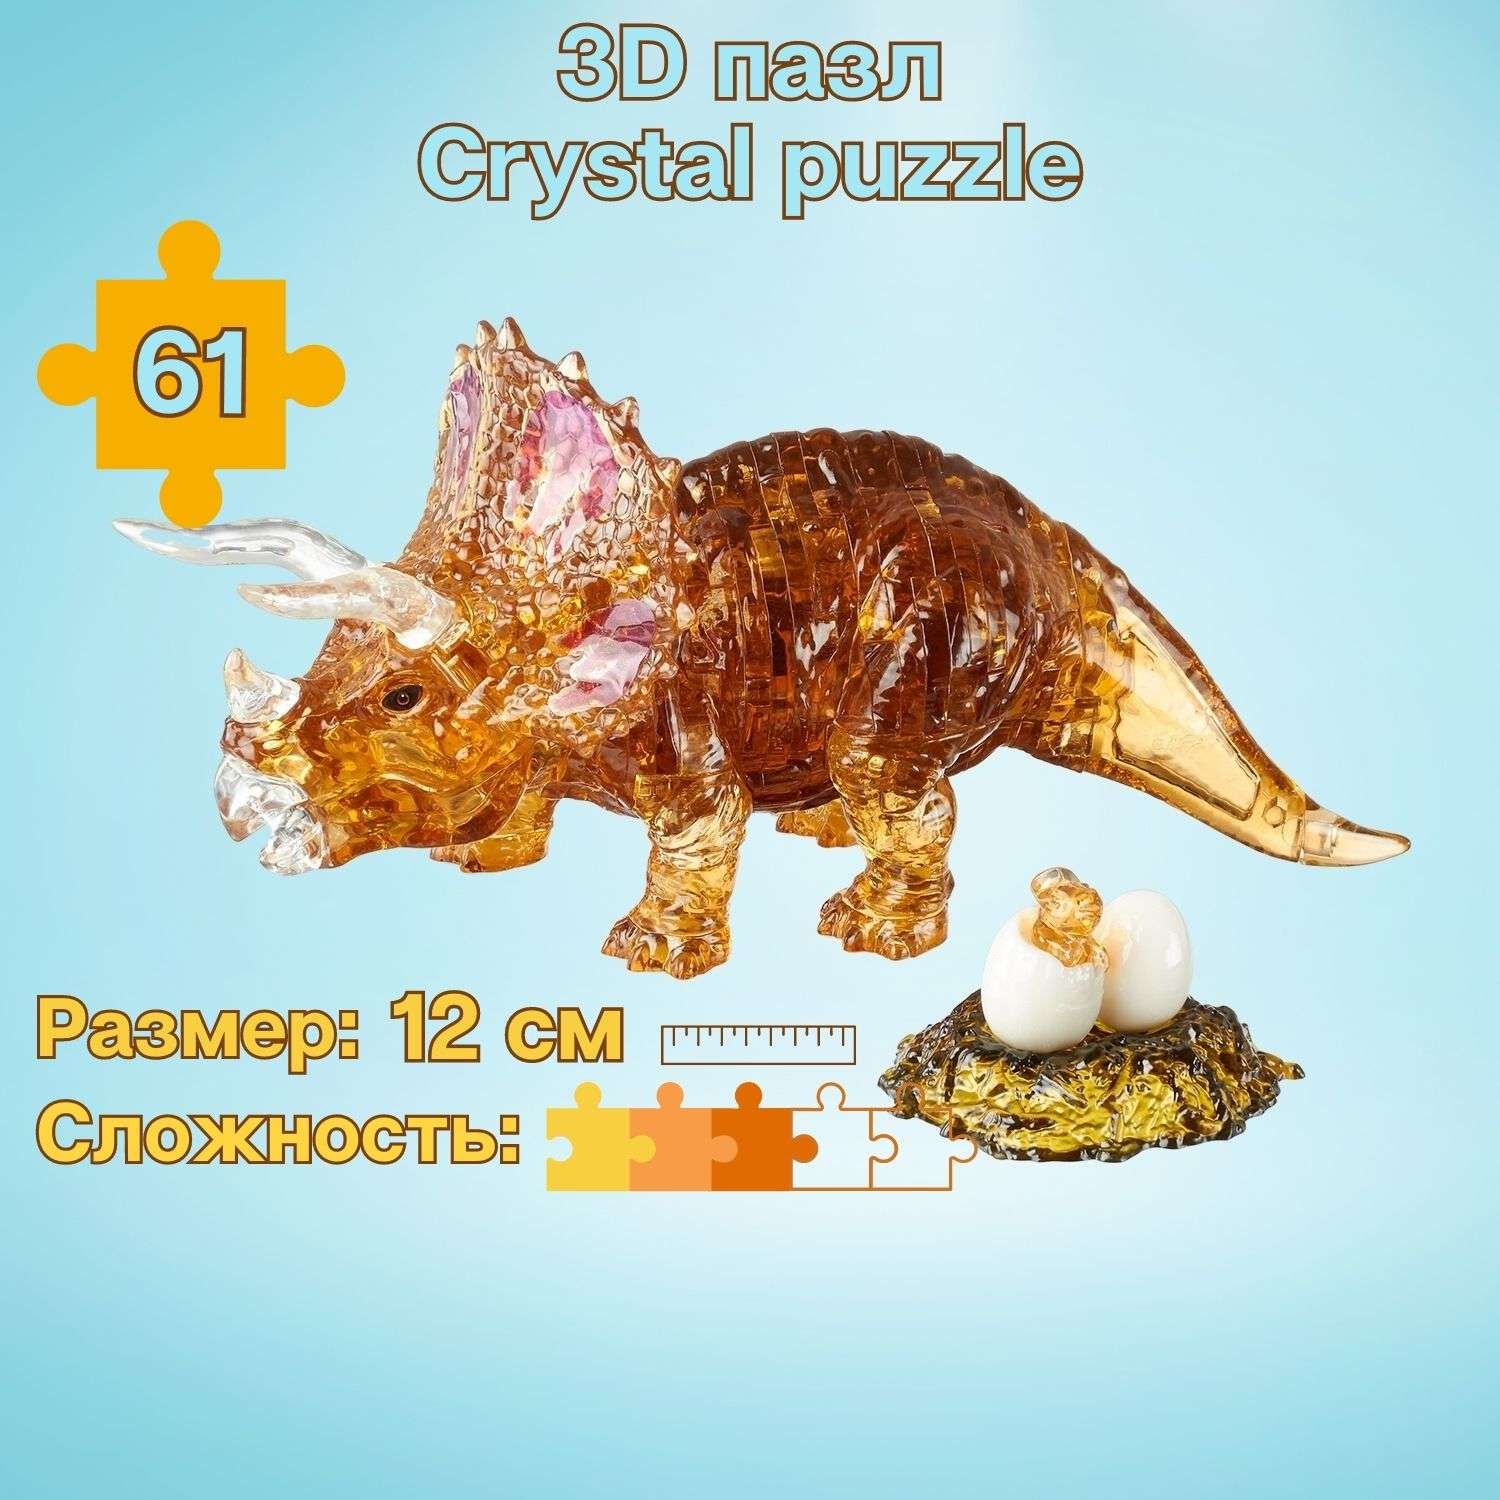 3D-пазл Crystal Puzzle IQ игра для детей кристальный Трицератопс 61 деталь - фото 1